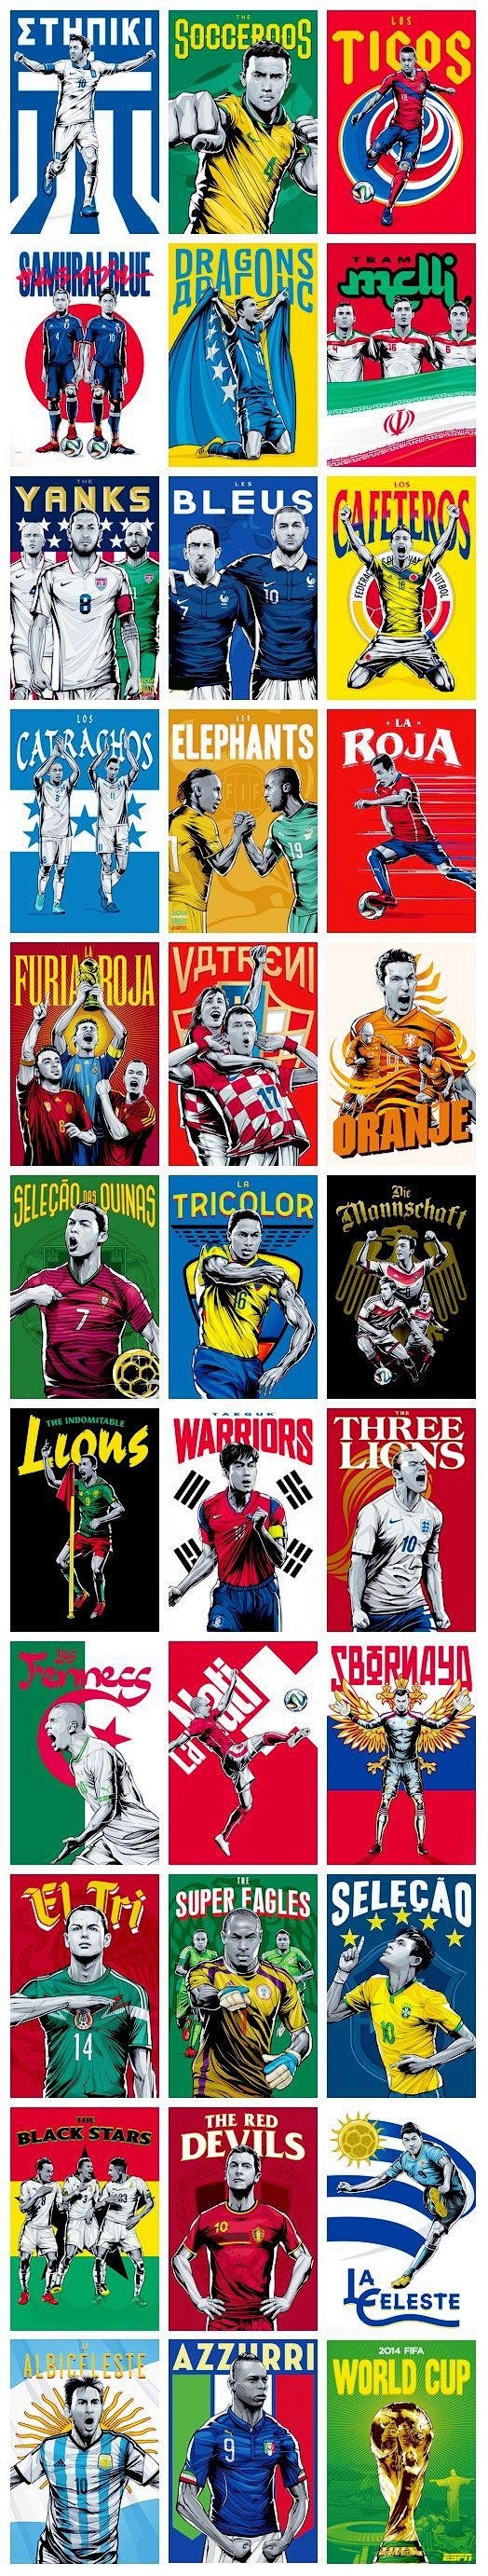 你最喜欢的体育海报有哪些？ - 知乎